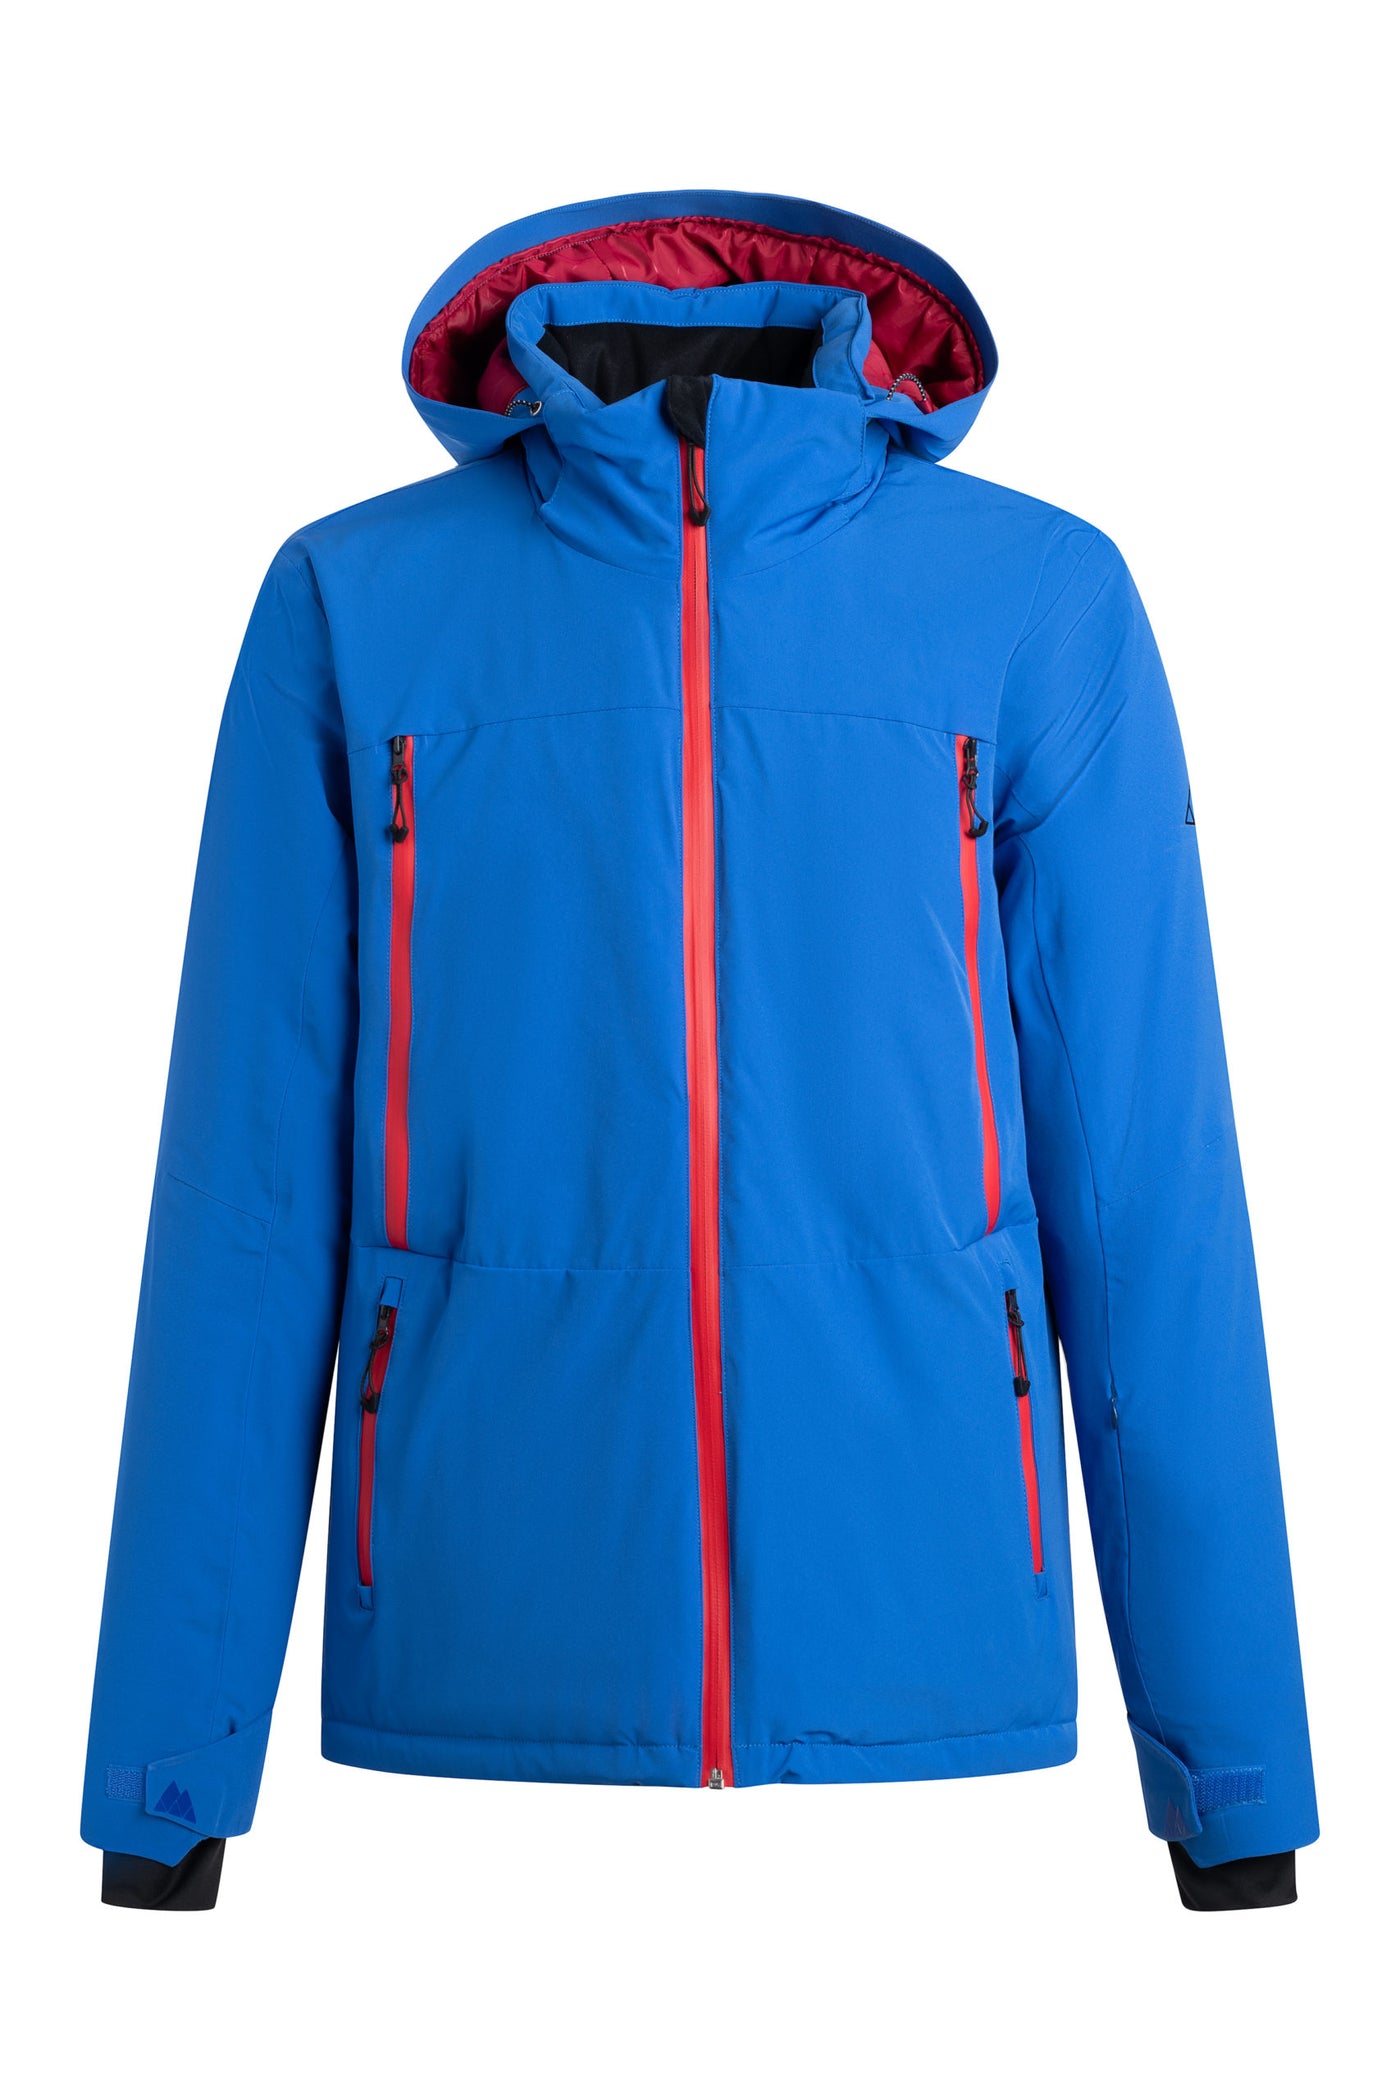 Manteau de ski alpin ou planche à neige pour hommes – Vertical Sports